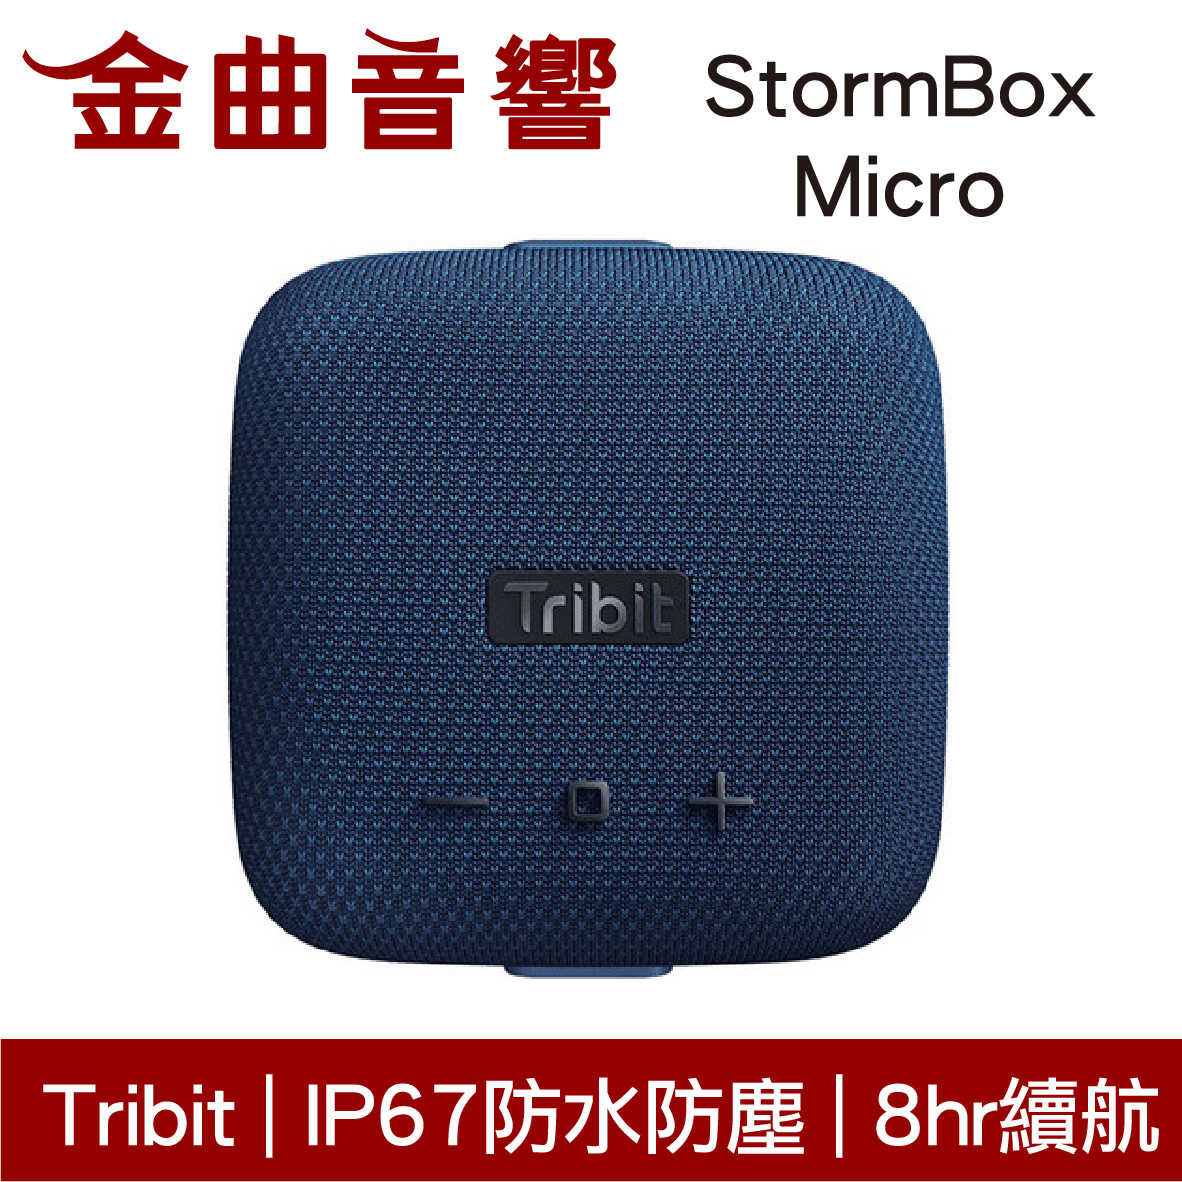 Tribit StormBox Micro 藍色 IP67 環繞音效 8hr續航 可攜式 藍牙 喇叭 | 金曲音響